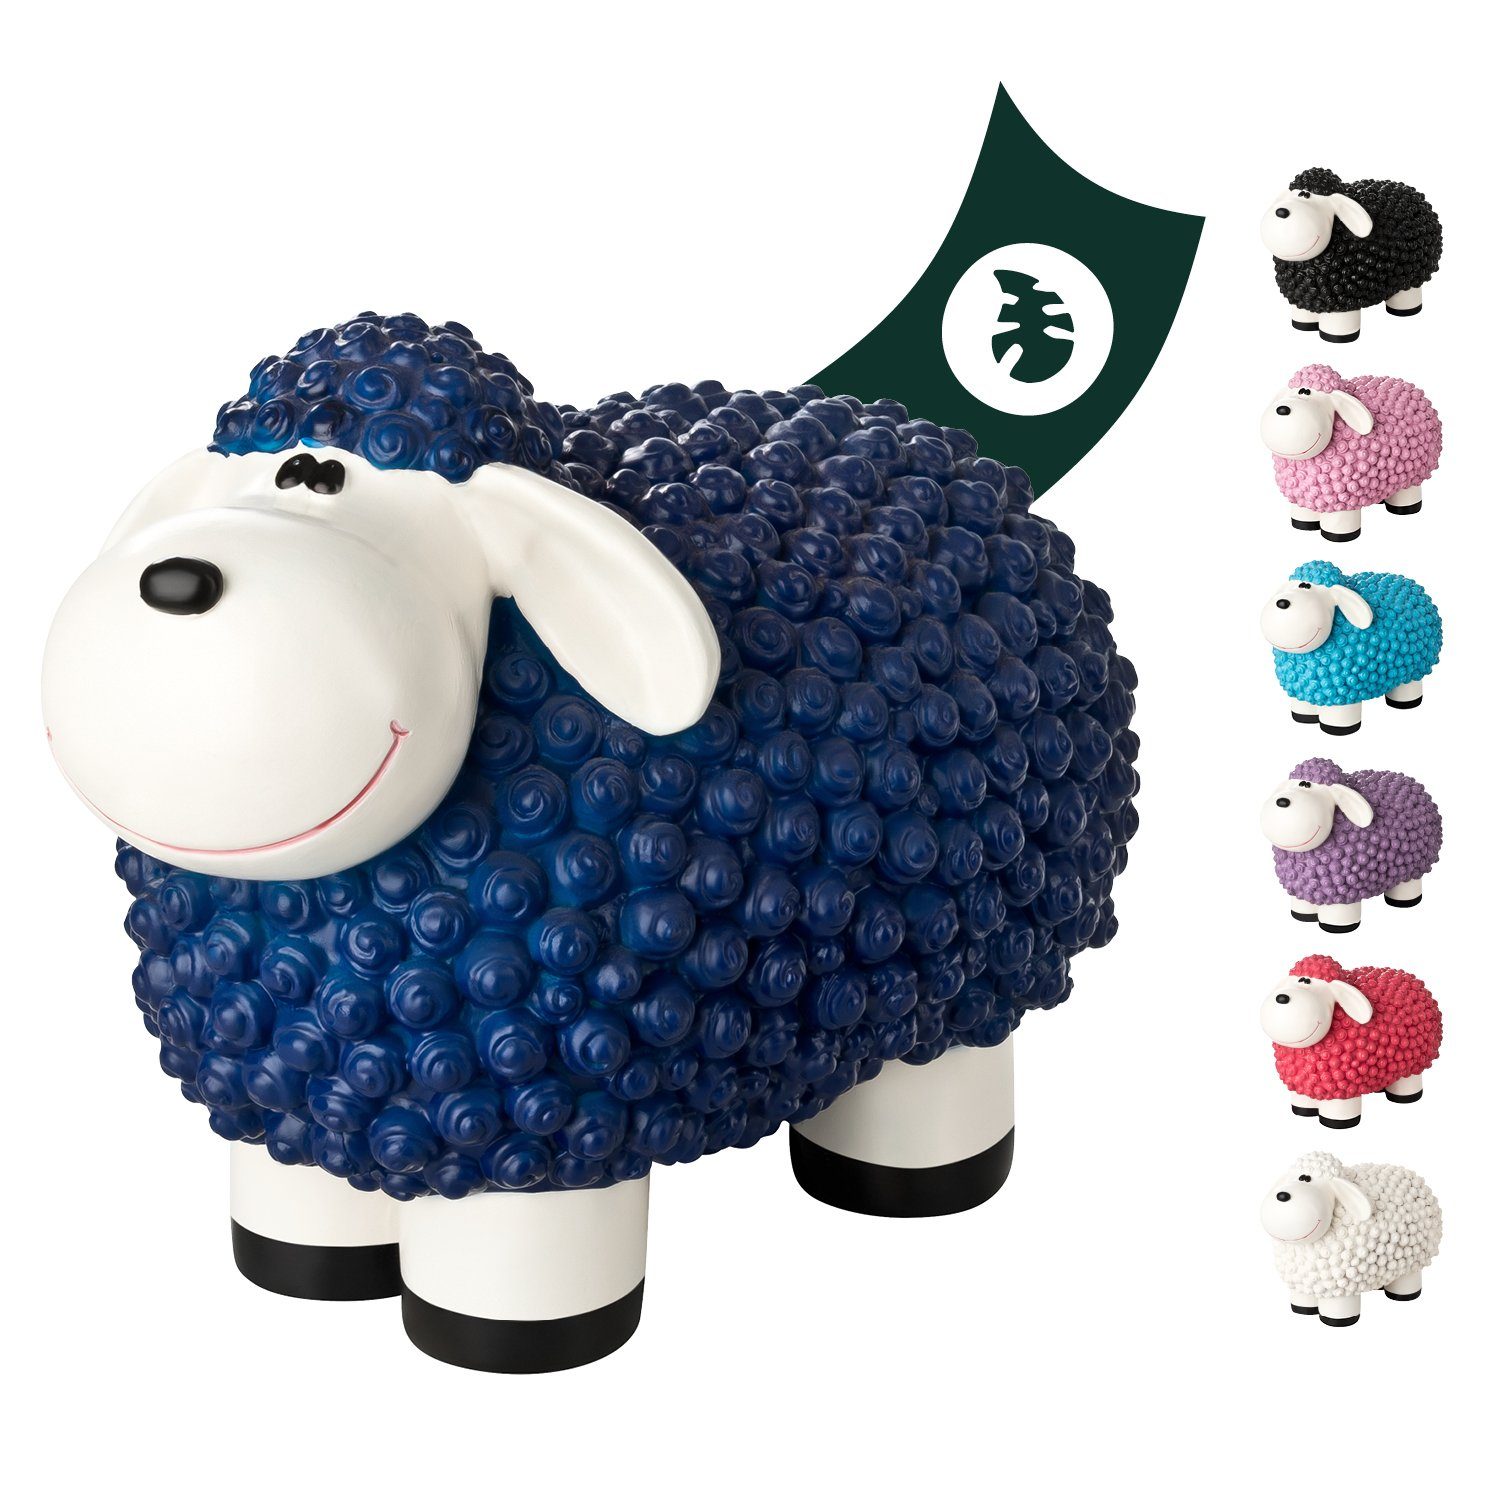 VERDOBA Gartenfigur Gartendeko Mini Schaf - Wetterfeste Gartenfigur - Deko Schaf für Außen, Polyresin Blau